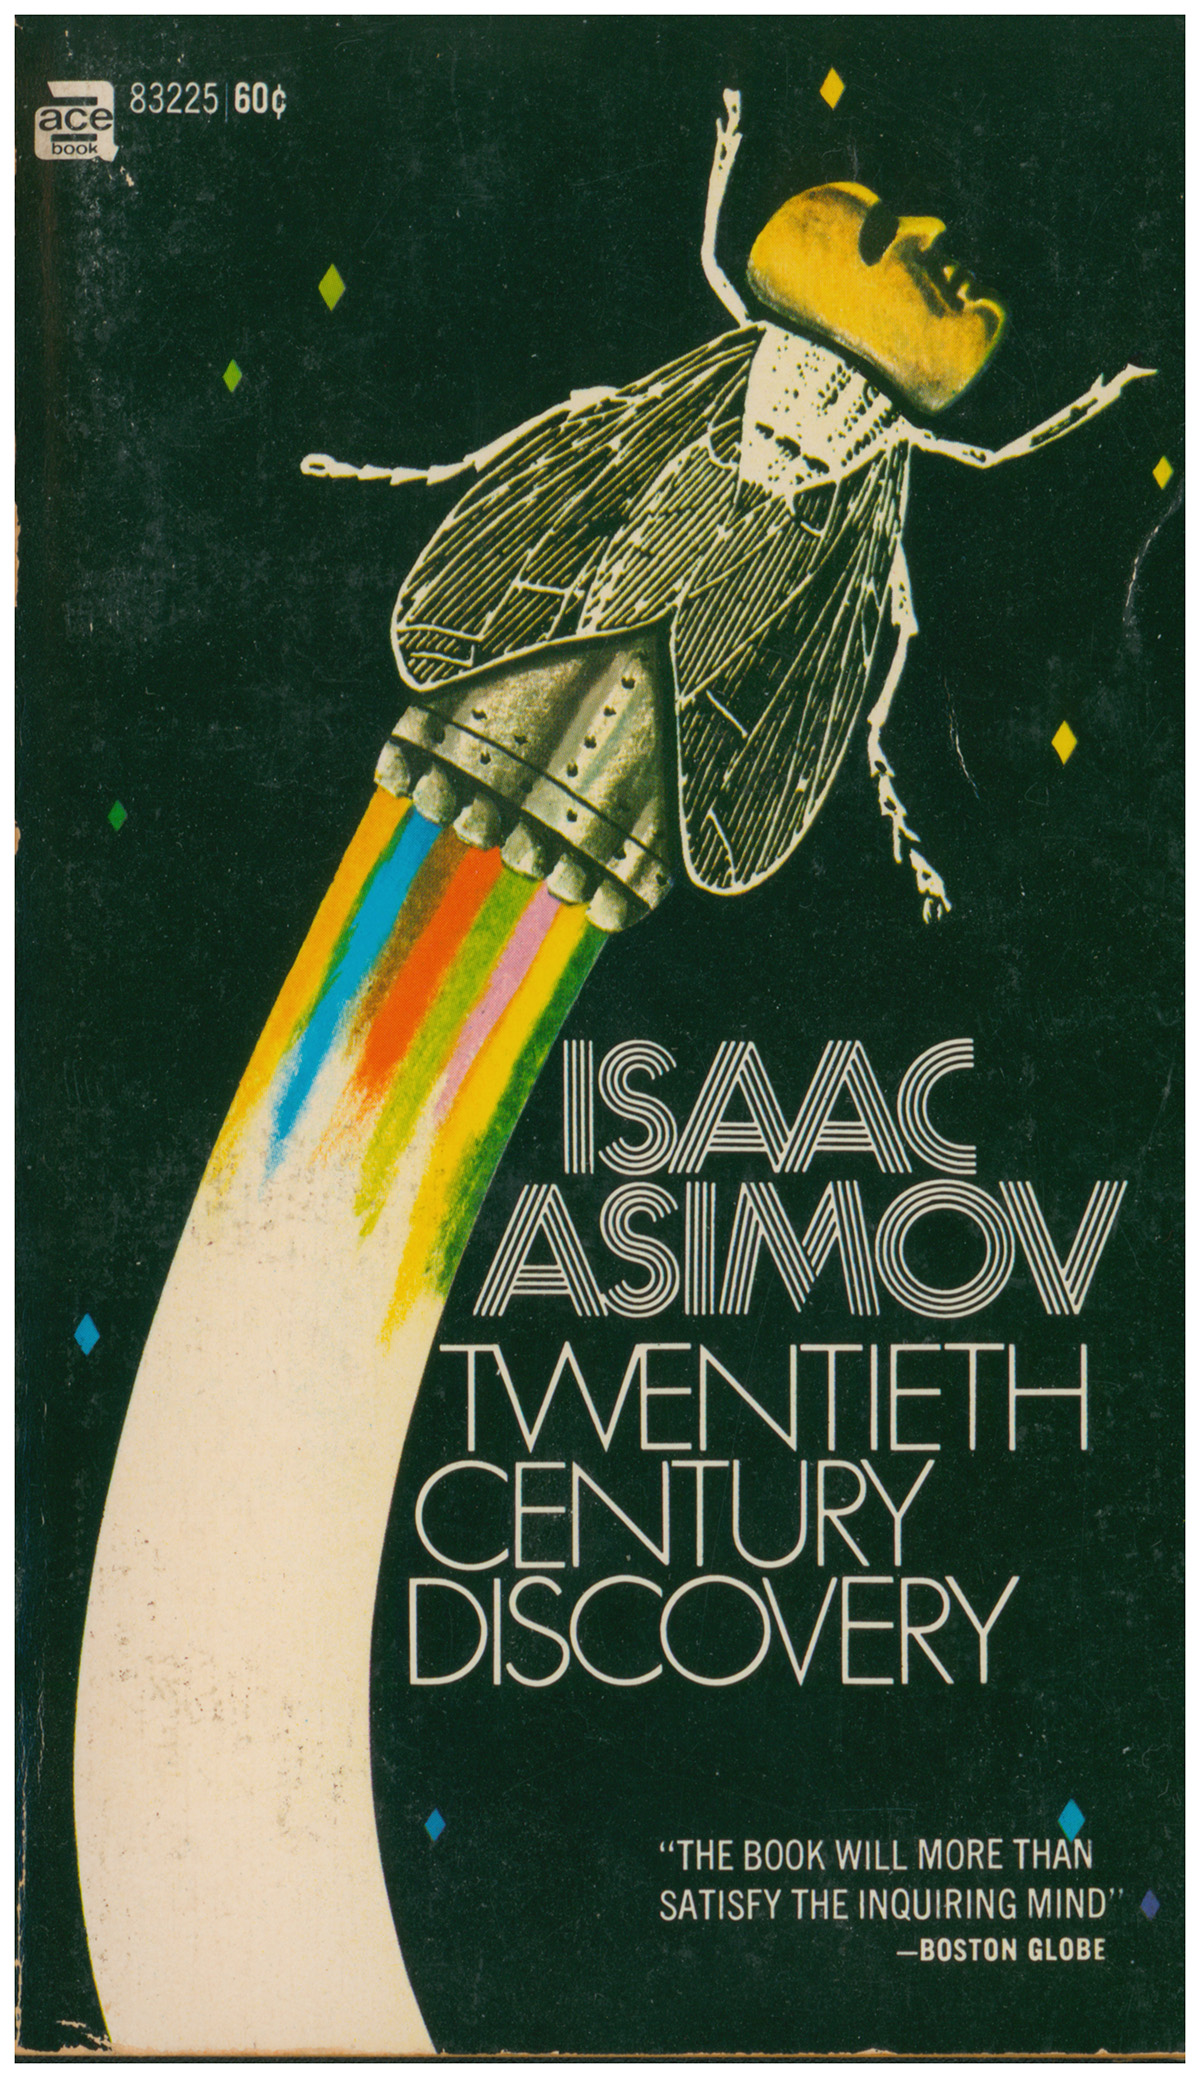 Asimov, Isaac - Twentieth Century Discovery (Ace 83225)